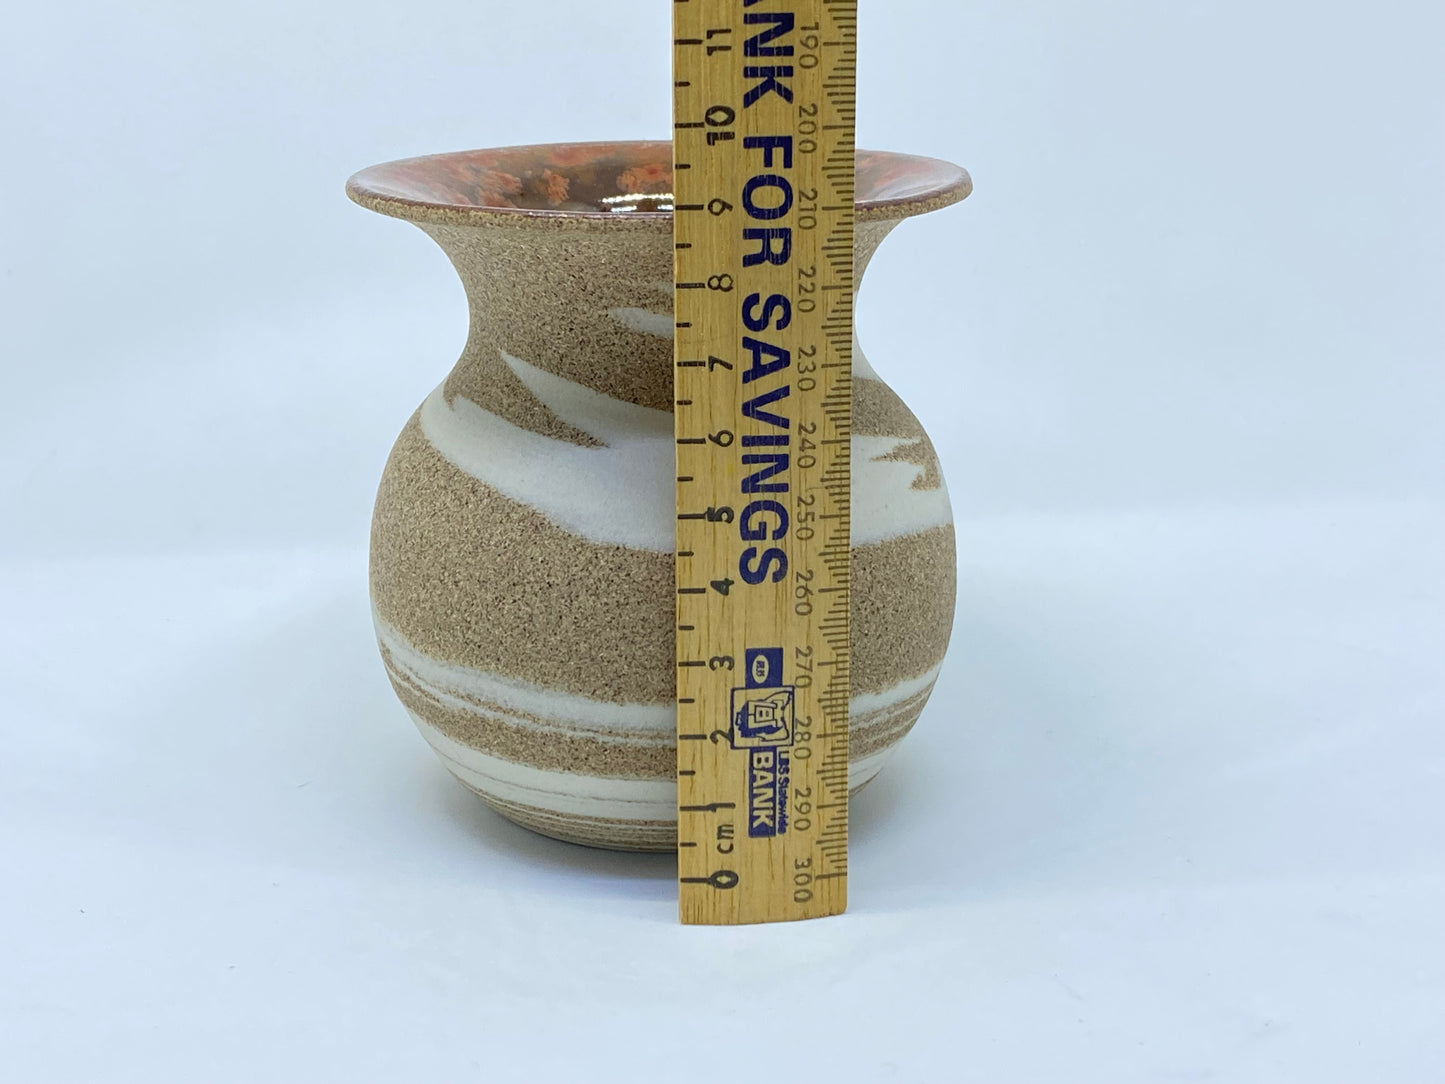 Eric Juckert small vase